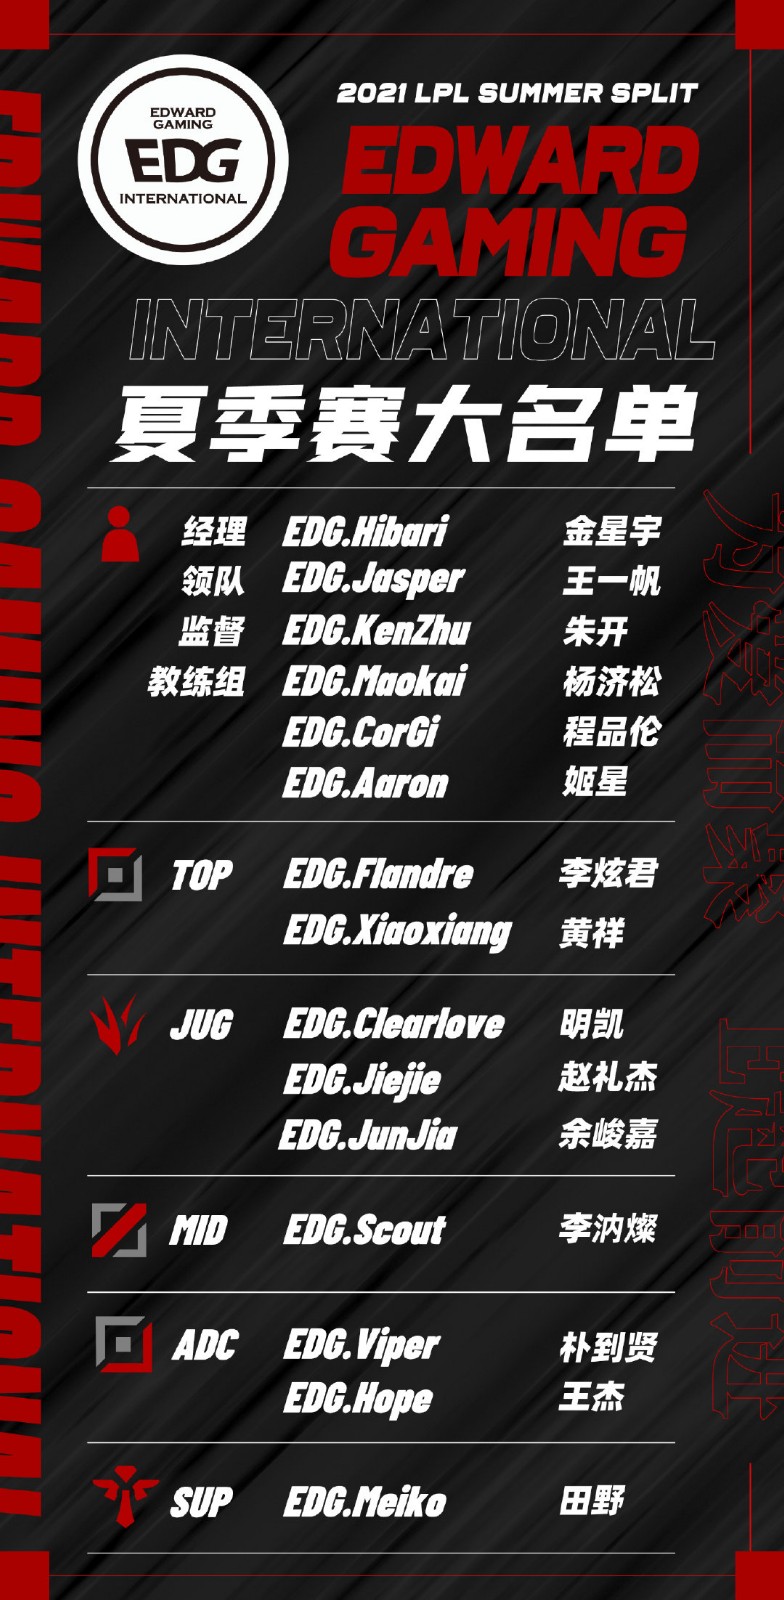 EDG公布大名单：打野Clearlove、Jiejie、Junjia